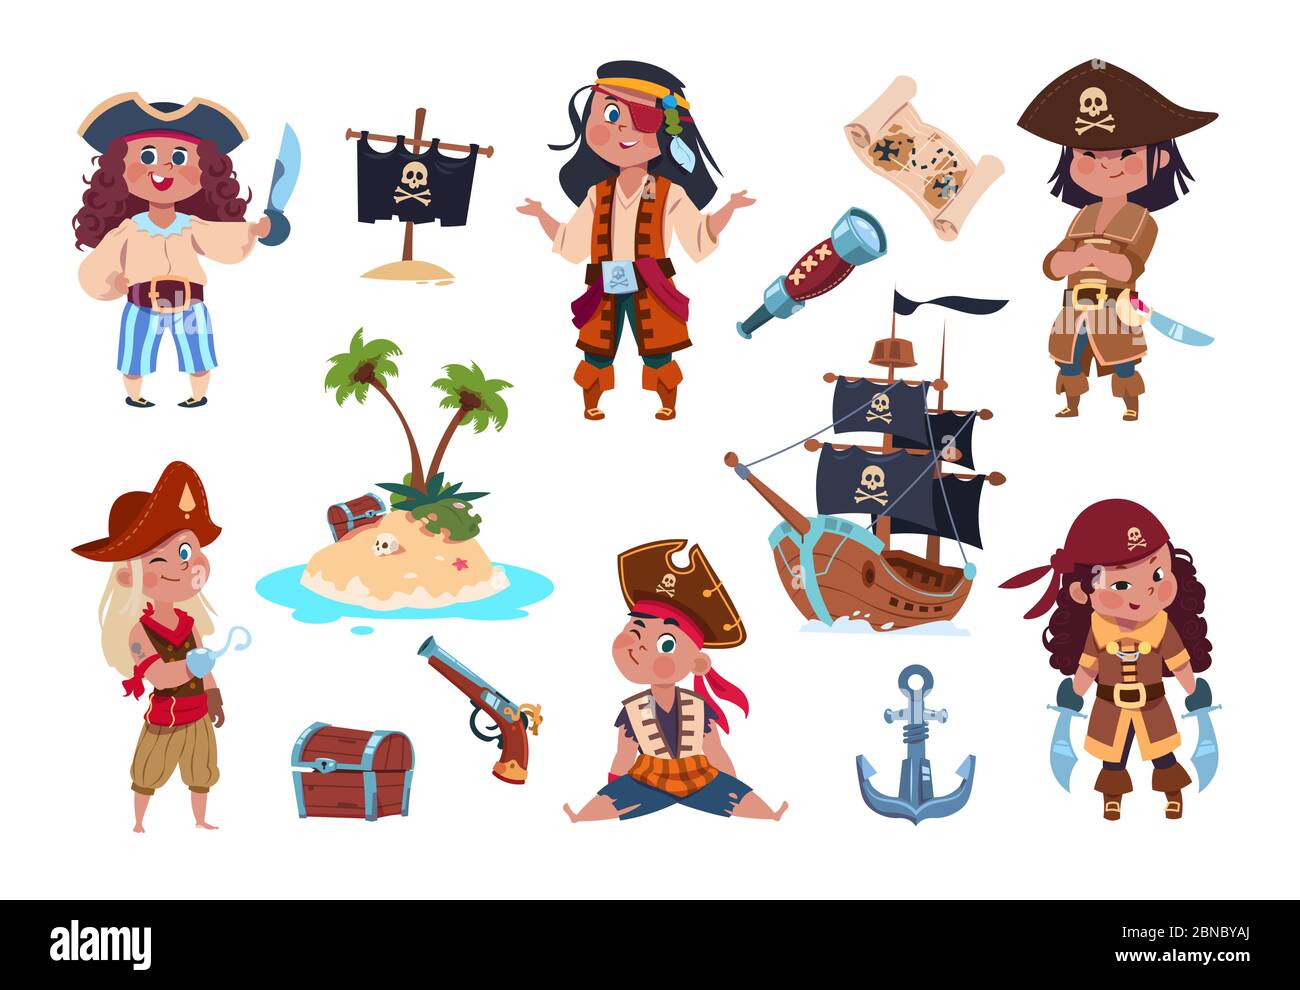 Personajes piratas. Dibujos animados niños piratas, marineros y capitán vector aislado conjunto. Capitán y pirata marinero, niño con espada y gancho ilustración Ilustración del Vector